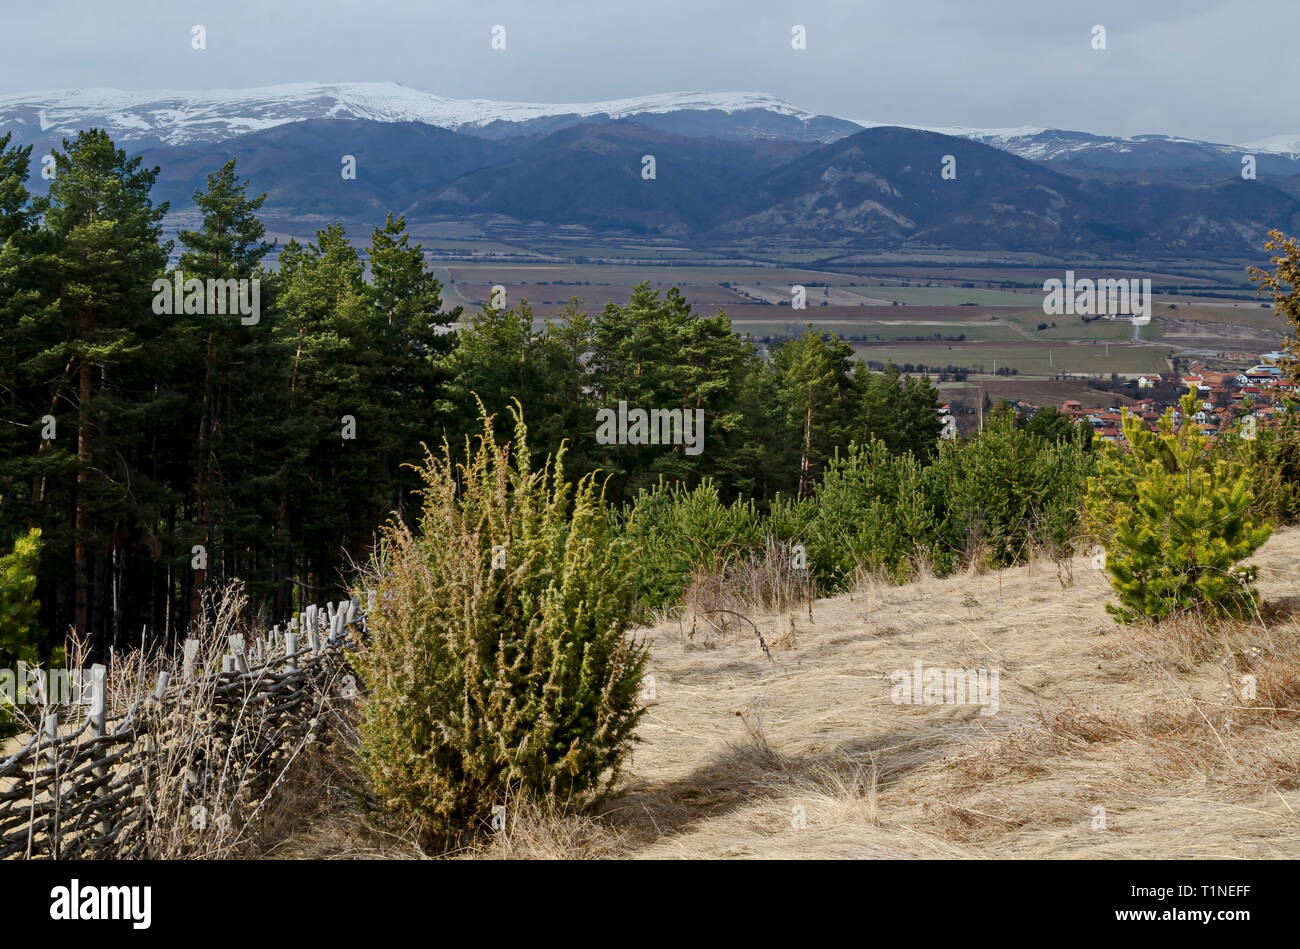 Parte dell'Zlatitsa Pirdop Valley vicino a villaggio Chavdar con graticcio, sullo sfondo della neve montagna balcanica, Sofia, Bulgaria, Europa Foto Stock